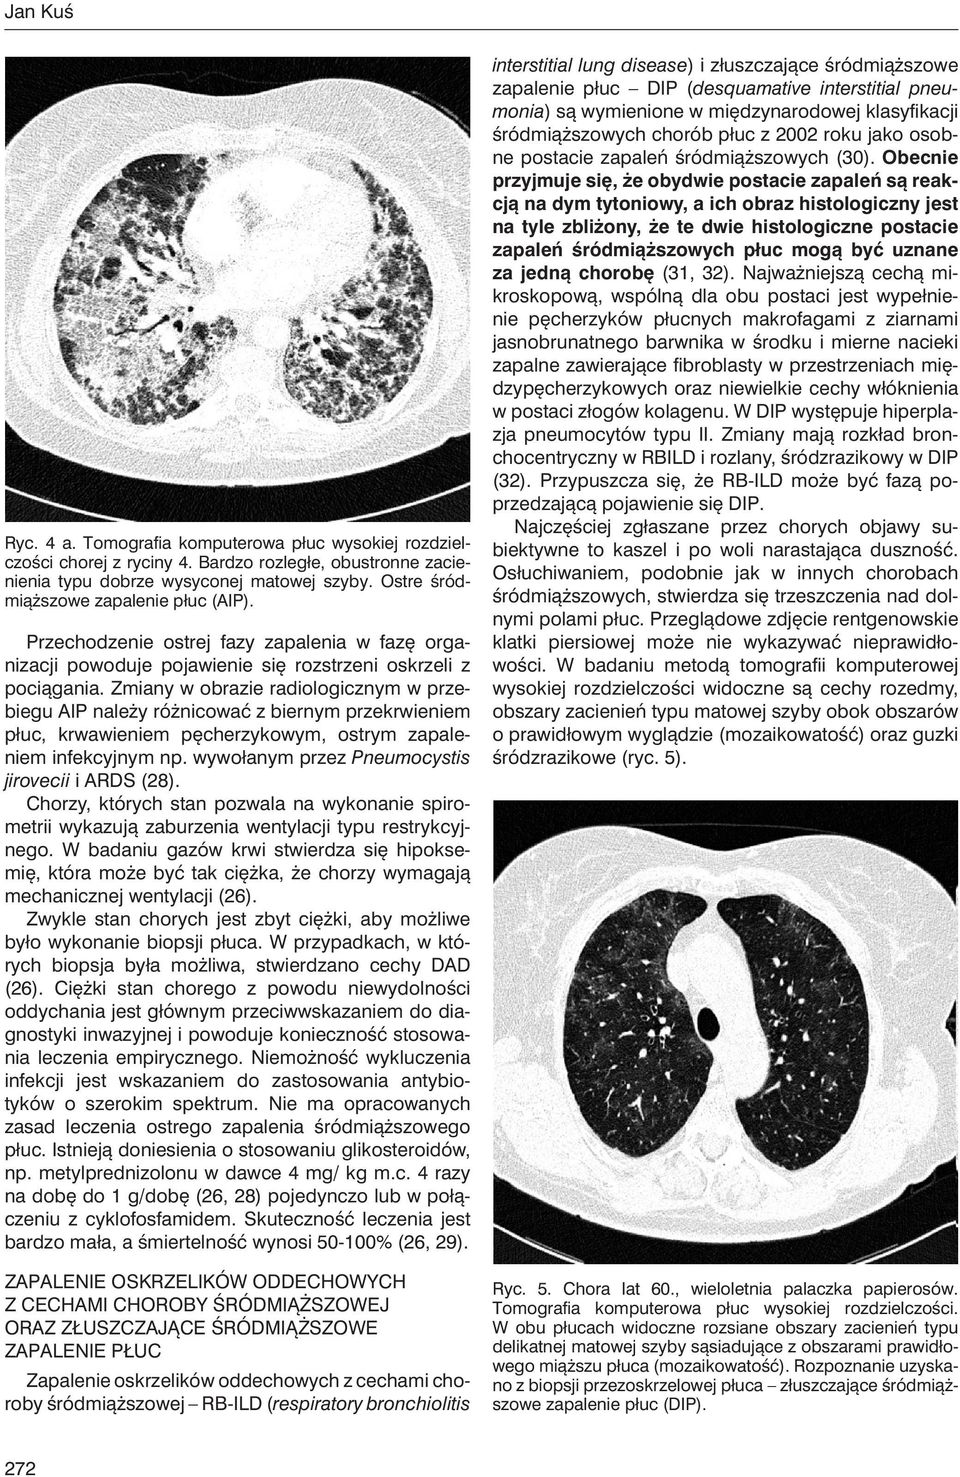 Zmiany w obrazie radiologicznym w przebiegu AIP należy różnicować z biernym przekrwieniem płuc, krwawieniem pęcherzykowym, ostrym zapaleniem infekcyjnym np.